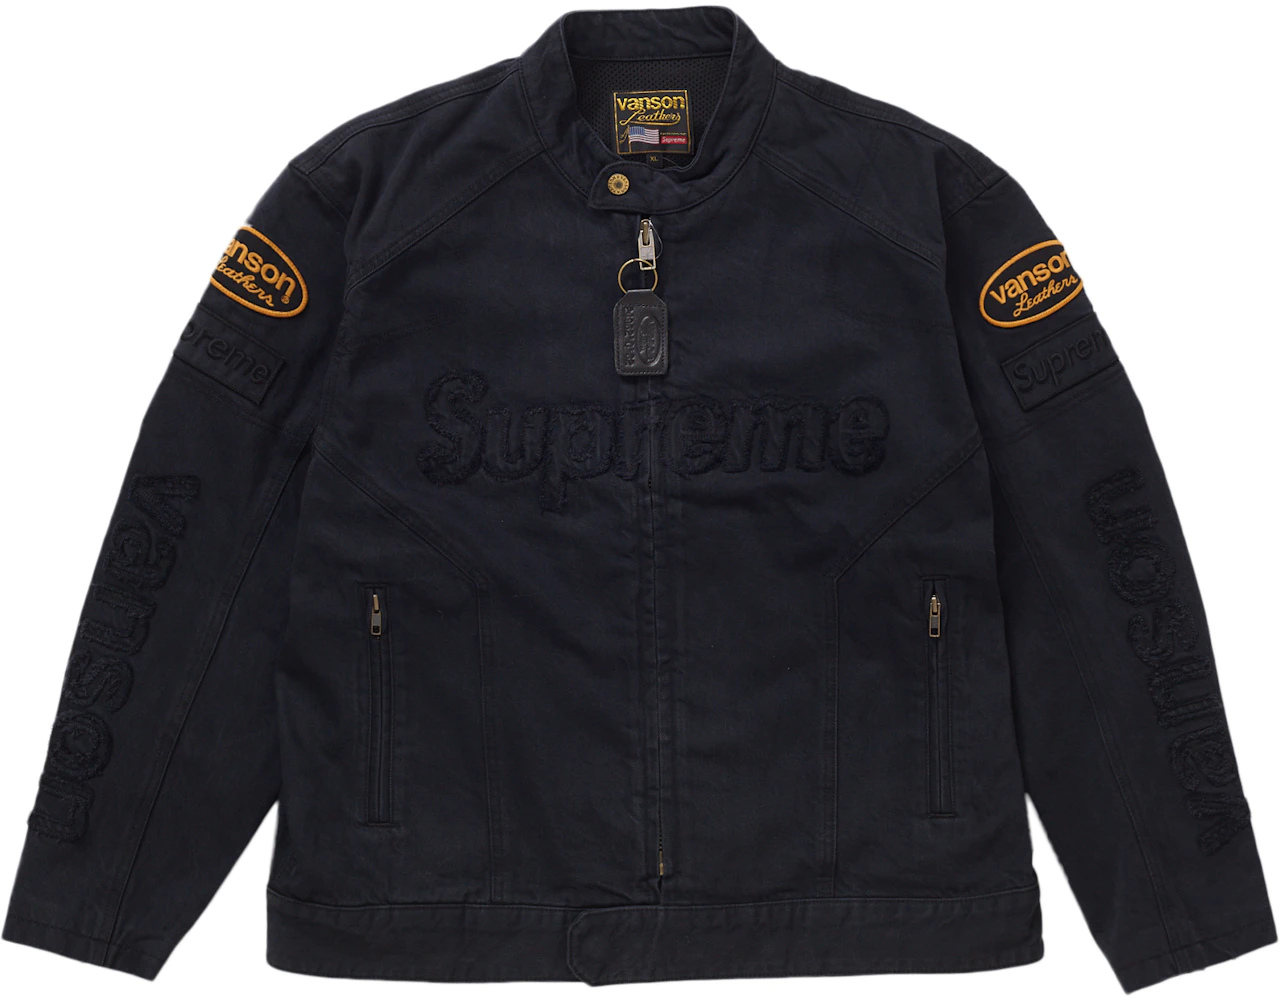 Black Supreme Vanson Leather Jacket - Maker of Jacket